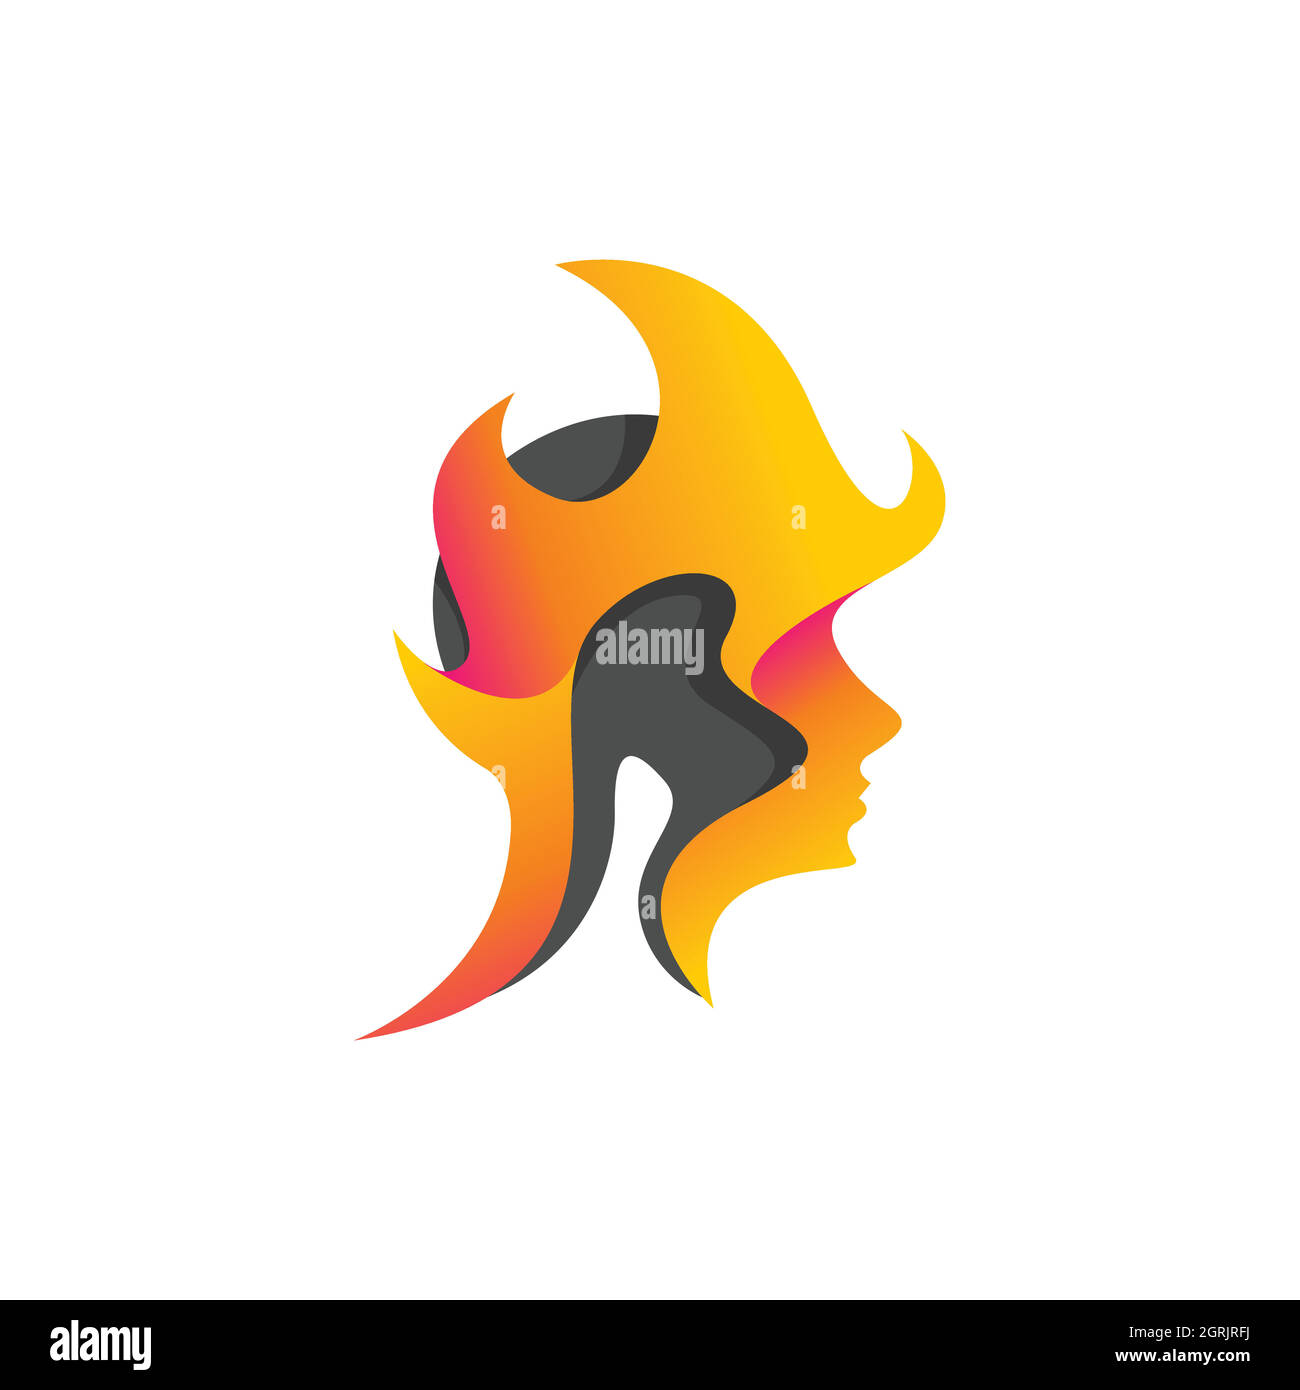 Mental head logo vector design concept. Head icon logo on fire for mental head care logo design image Stock Vector